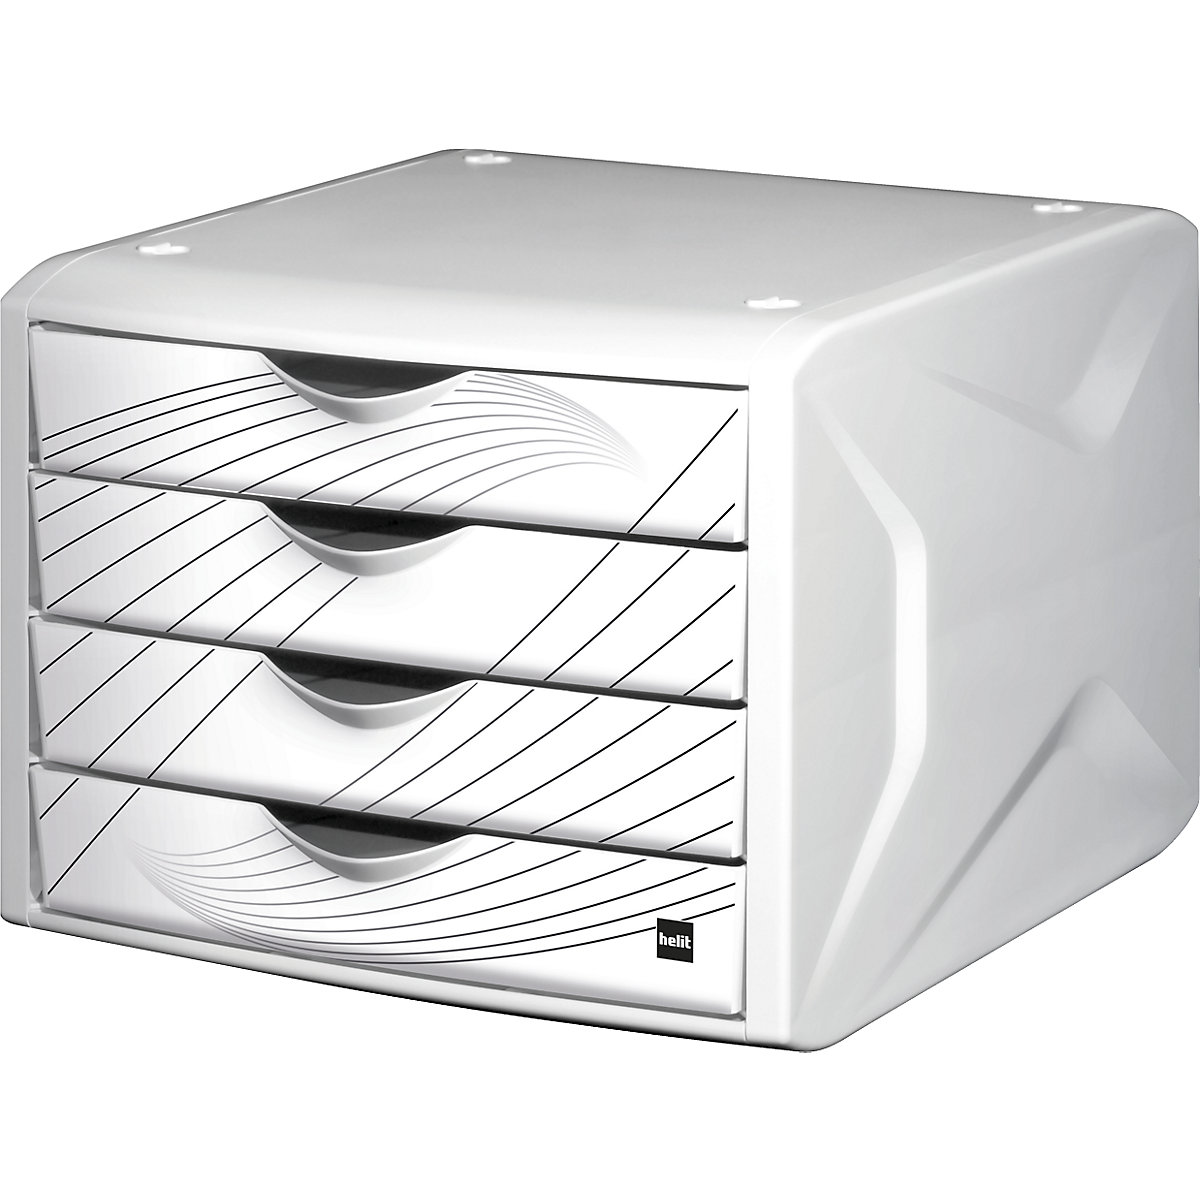 Zásuvkový box – helit, v x š x h 212 x 262 x 330 mm, OJ 5 ks, farba zásuvky white queen-9